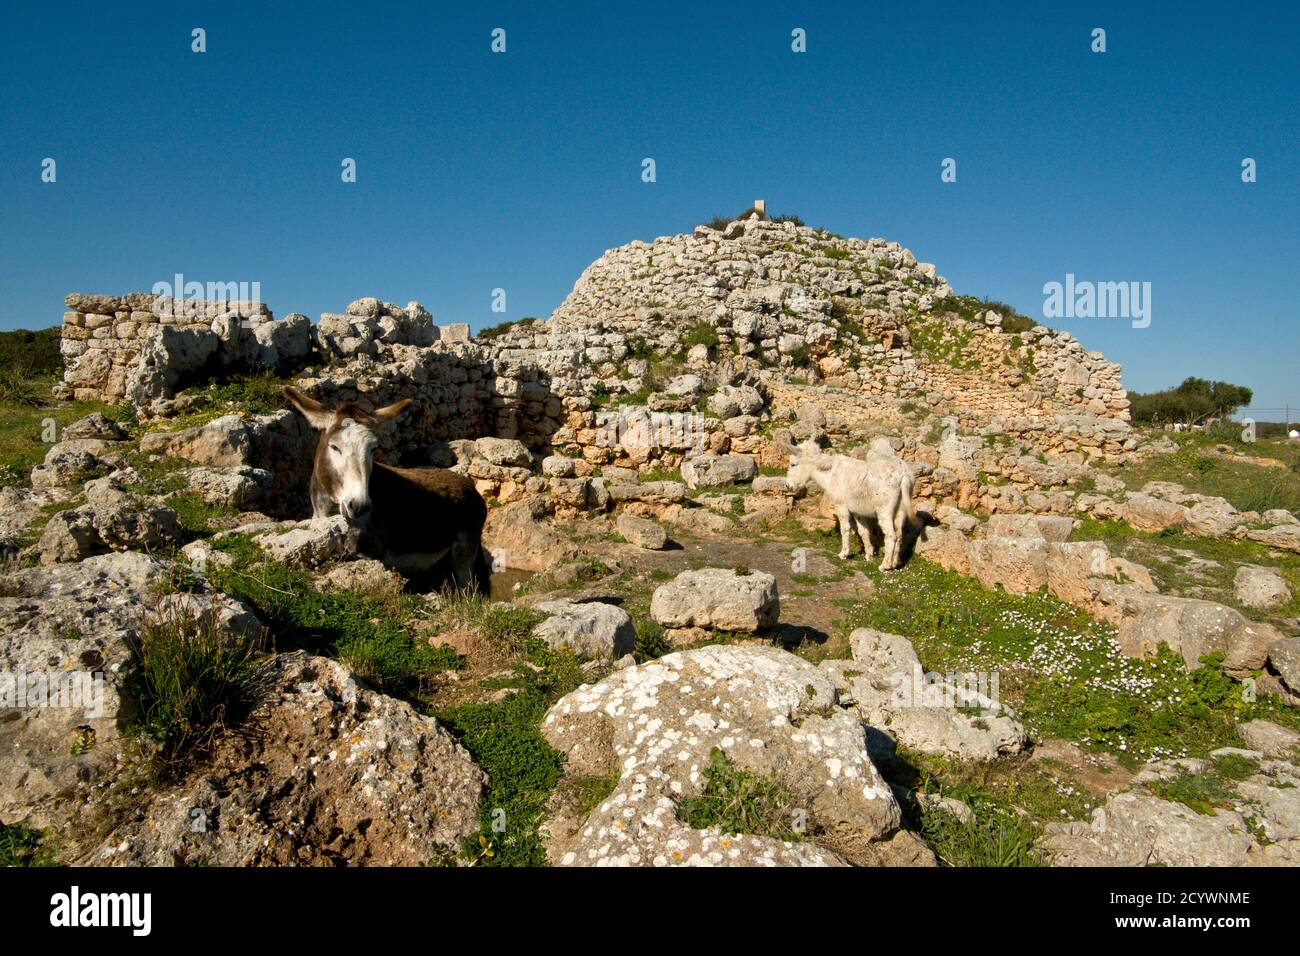 Santuario y Talayot Son Na Caçana, siglo X antes de Cristo. Alaior.Menorca.Balearic islands.Spain. Stock Photo